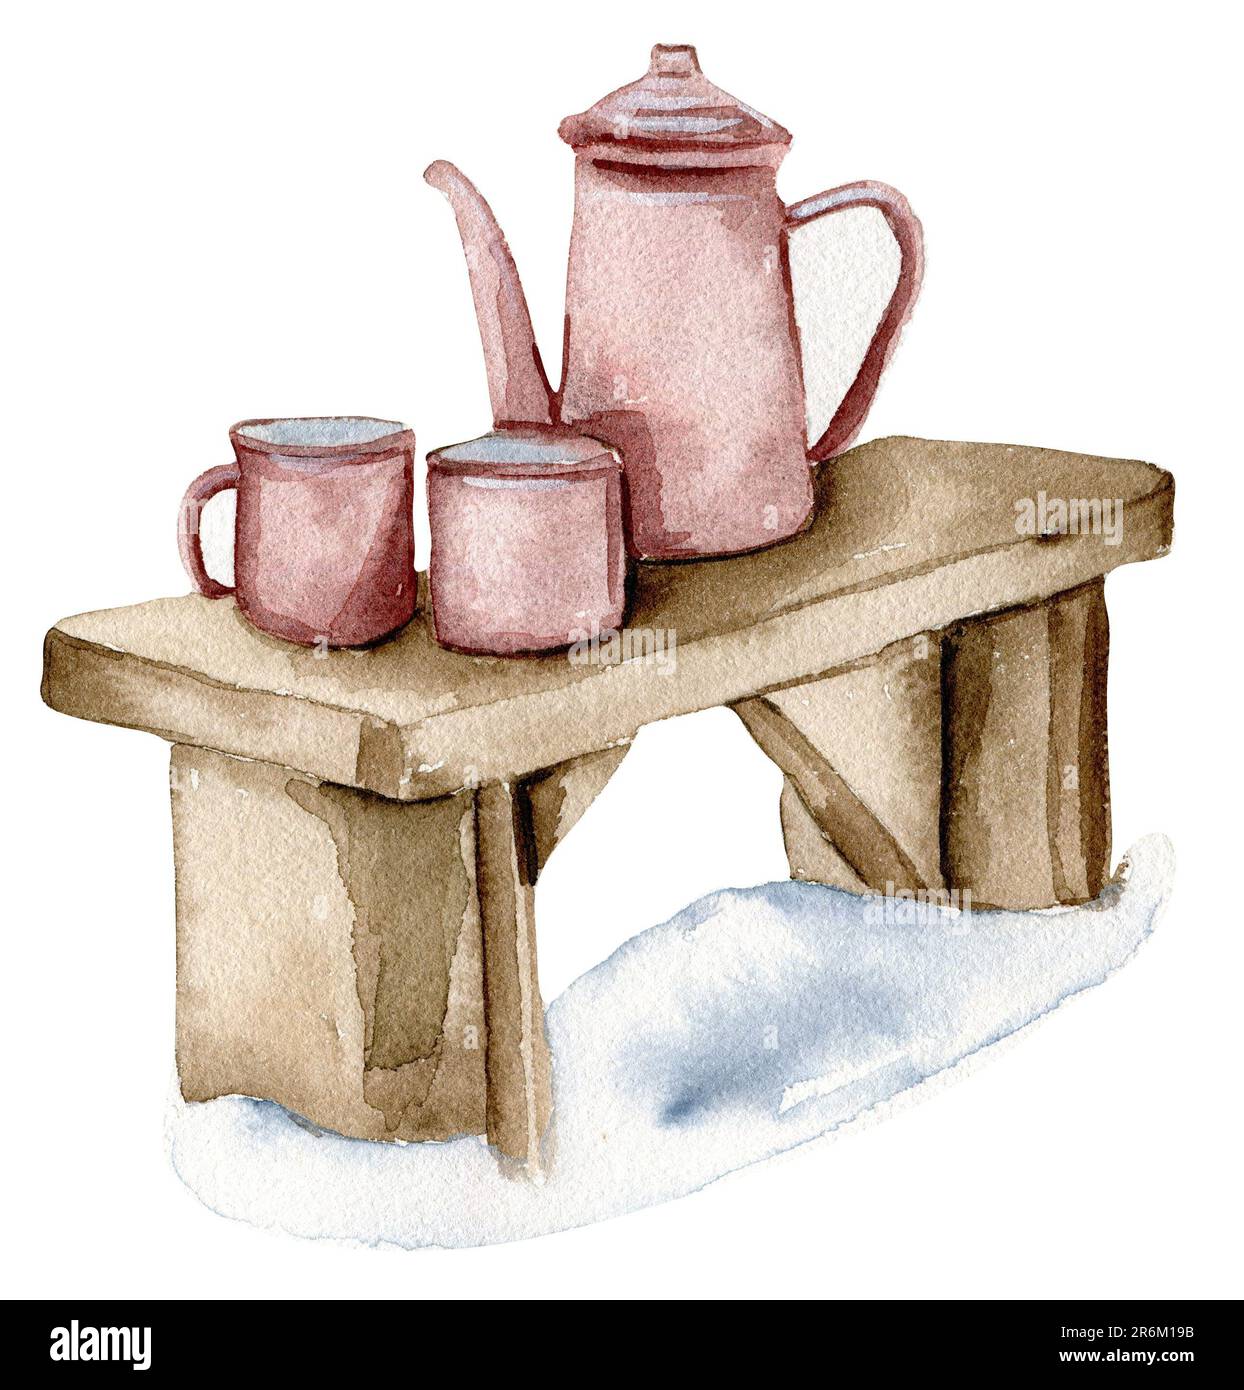 Théière avec tasses sur un banc dans la neige. Illustration aquarelle dessinée à la main. Vacances d'hiver. Banque D'Images